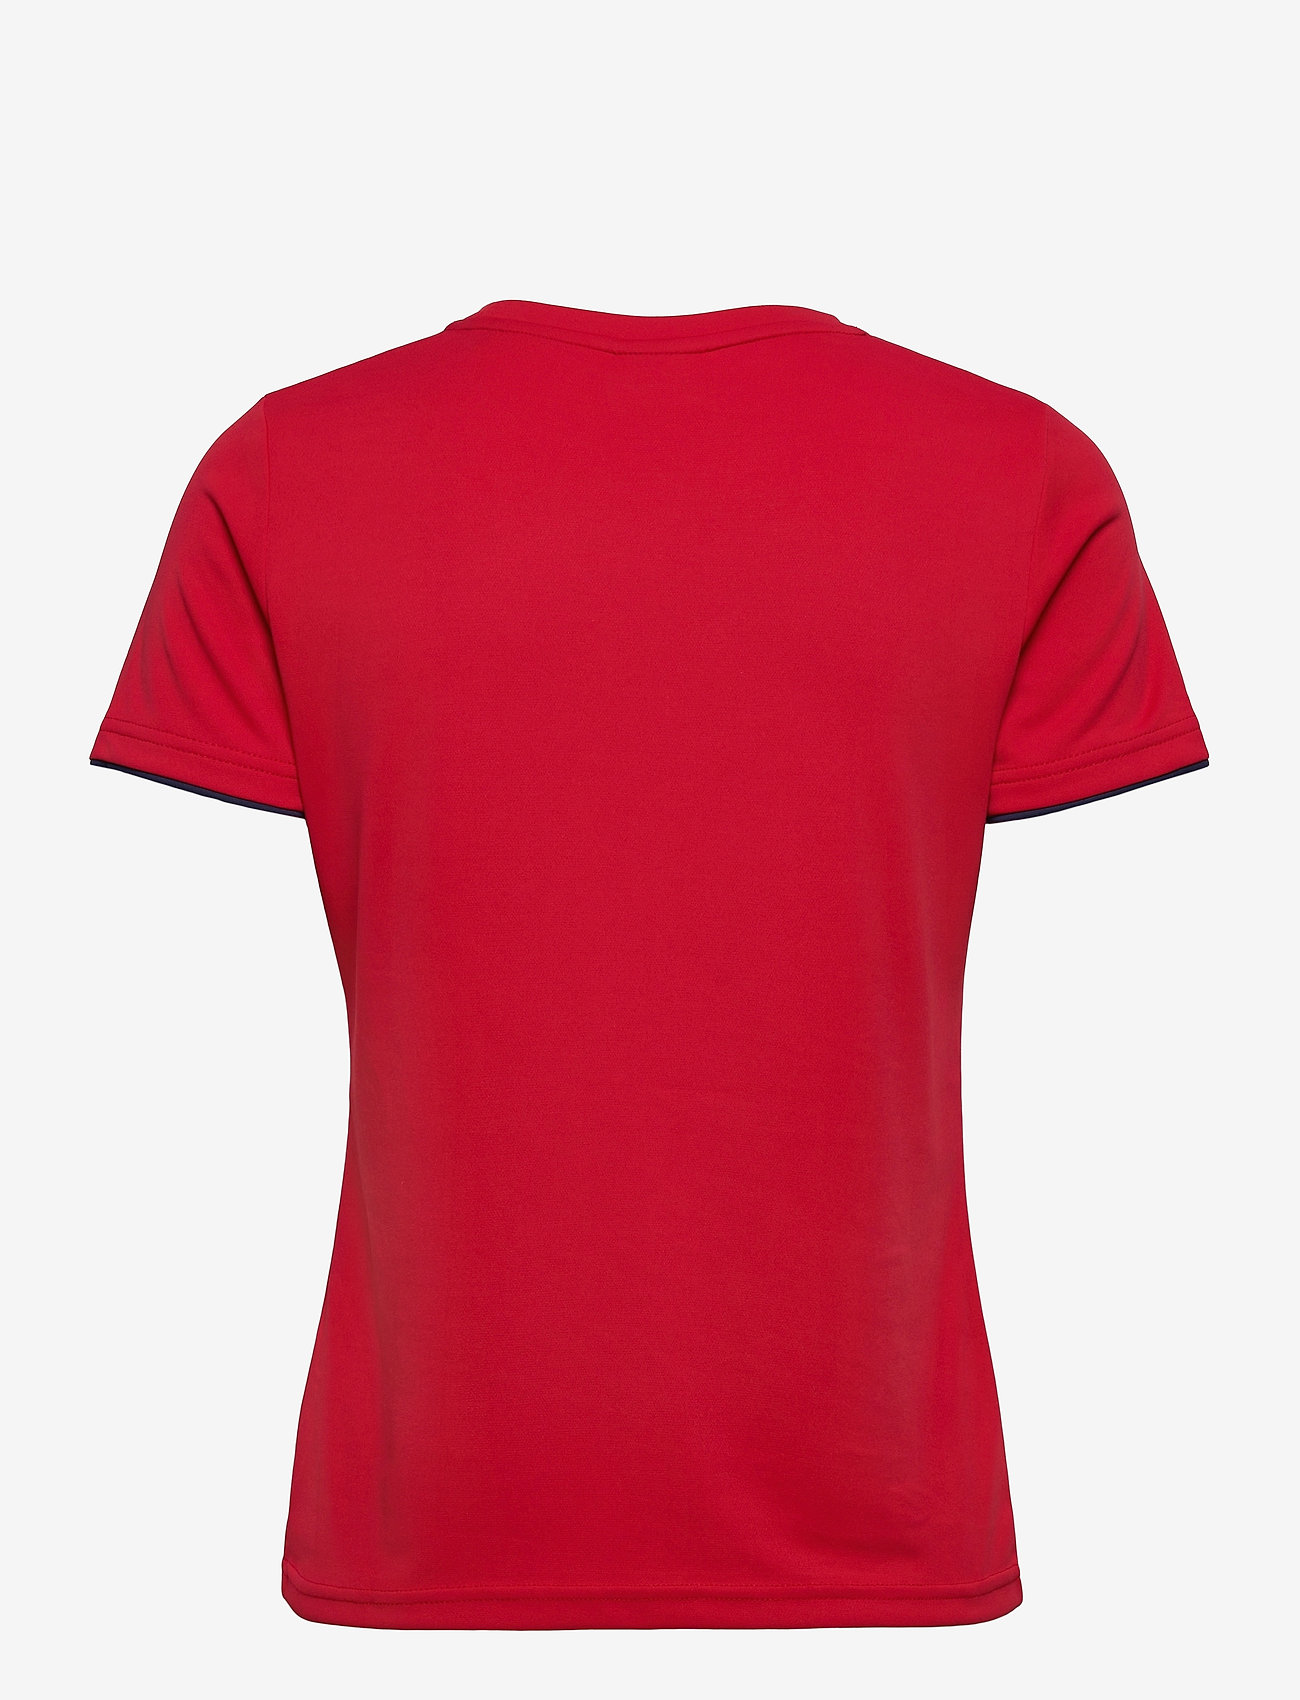 Zerv - ZERV Raven Womens T-shirt - laagste prijzen - red - 1